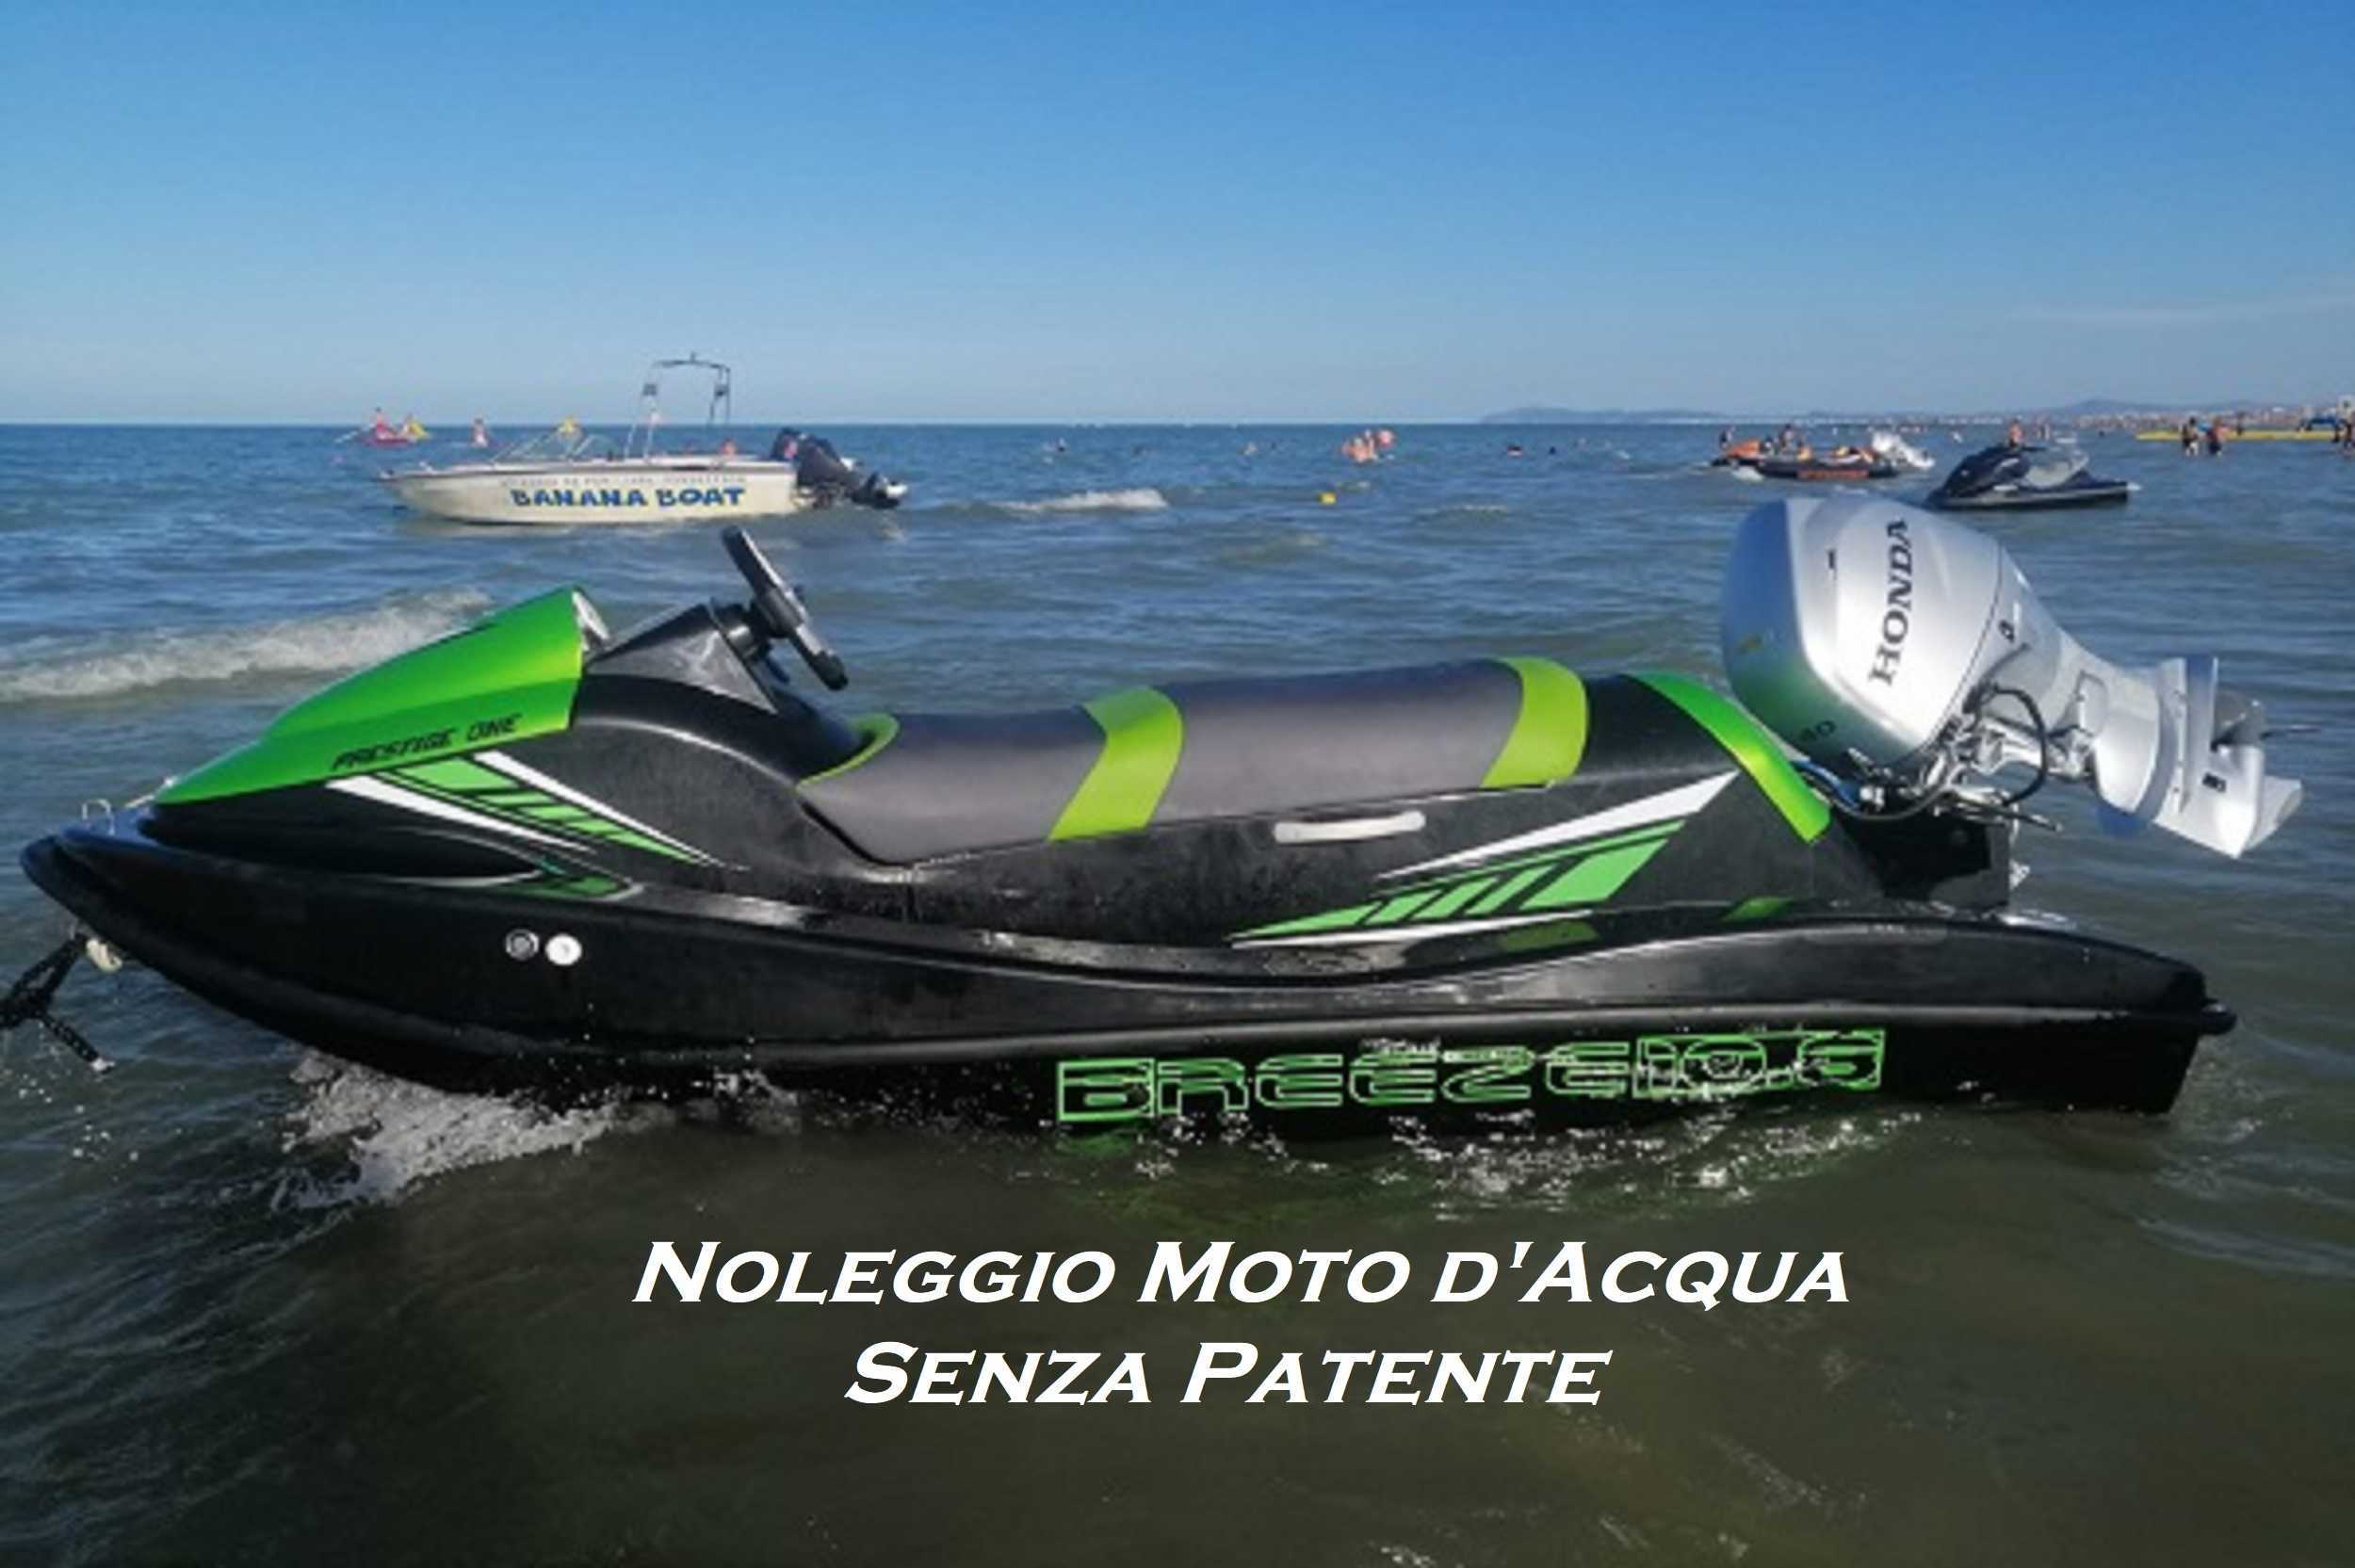 Noleggio Moto d'acqua Rimini